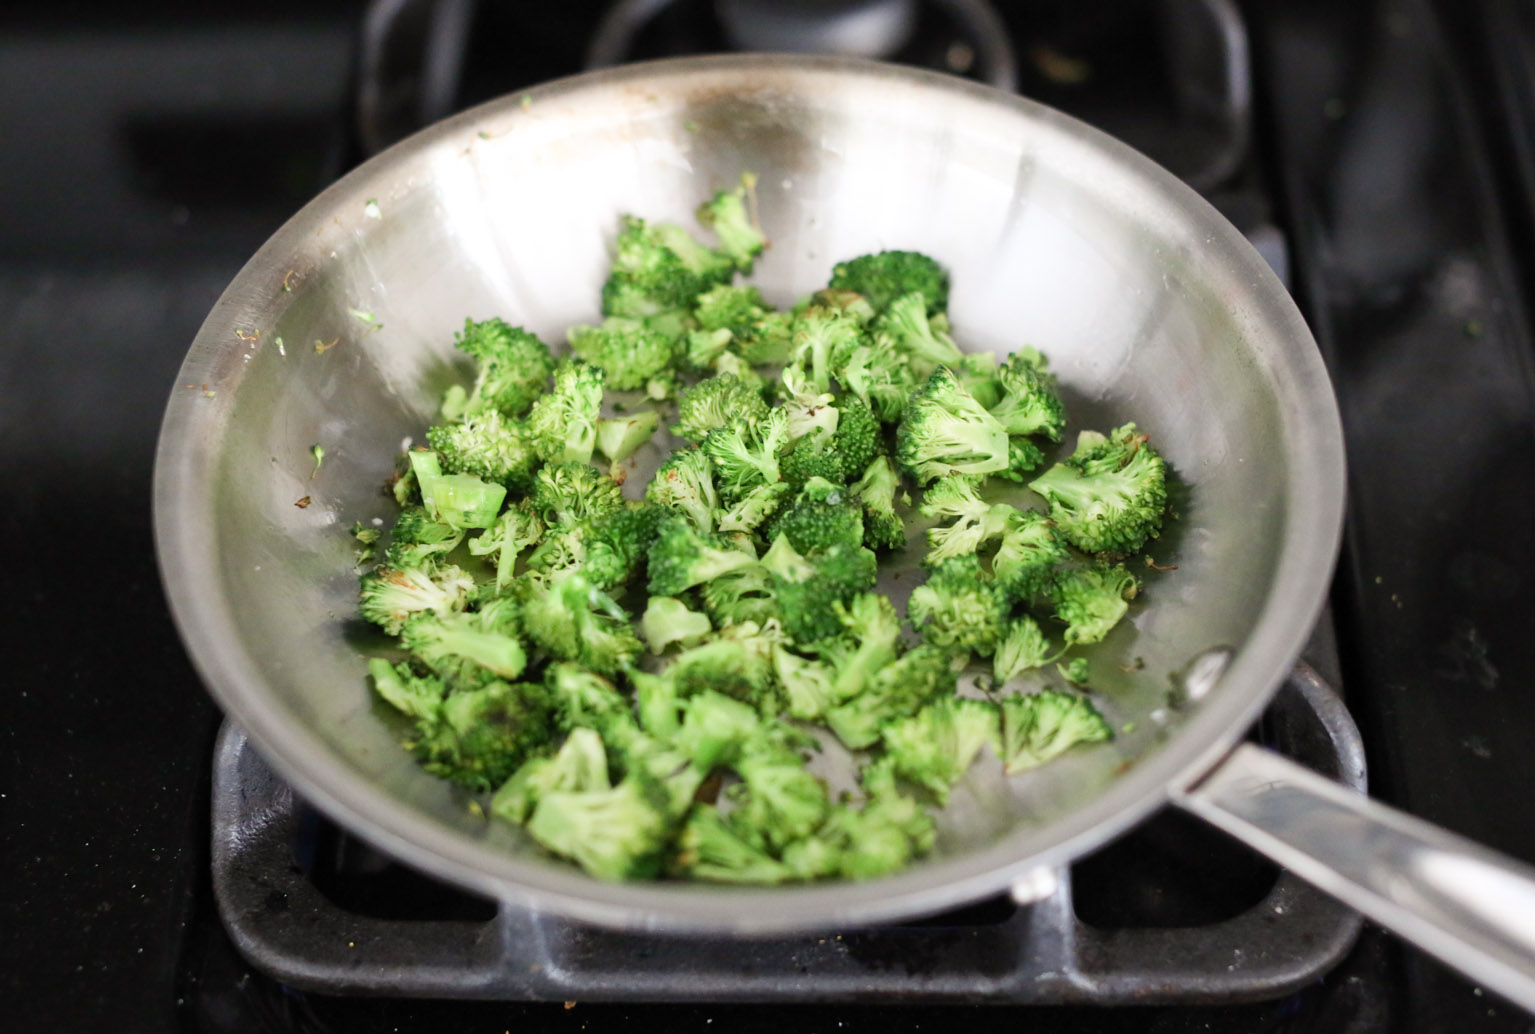 Personal Broccoli Parm Frittata